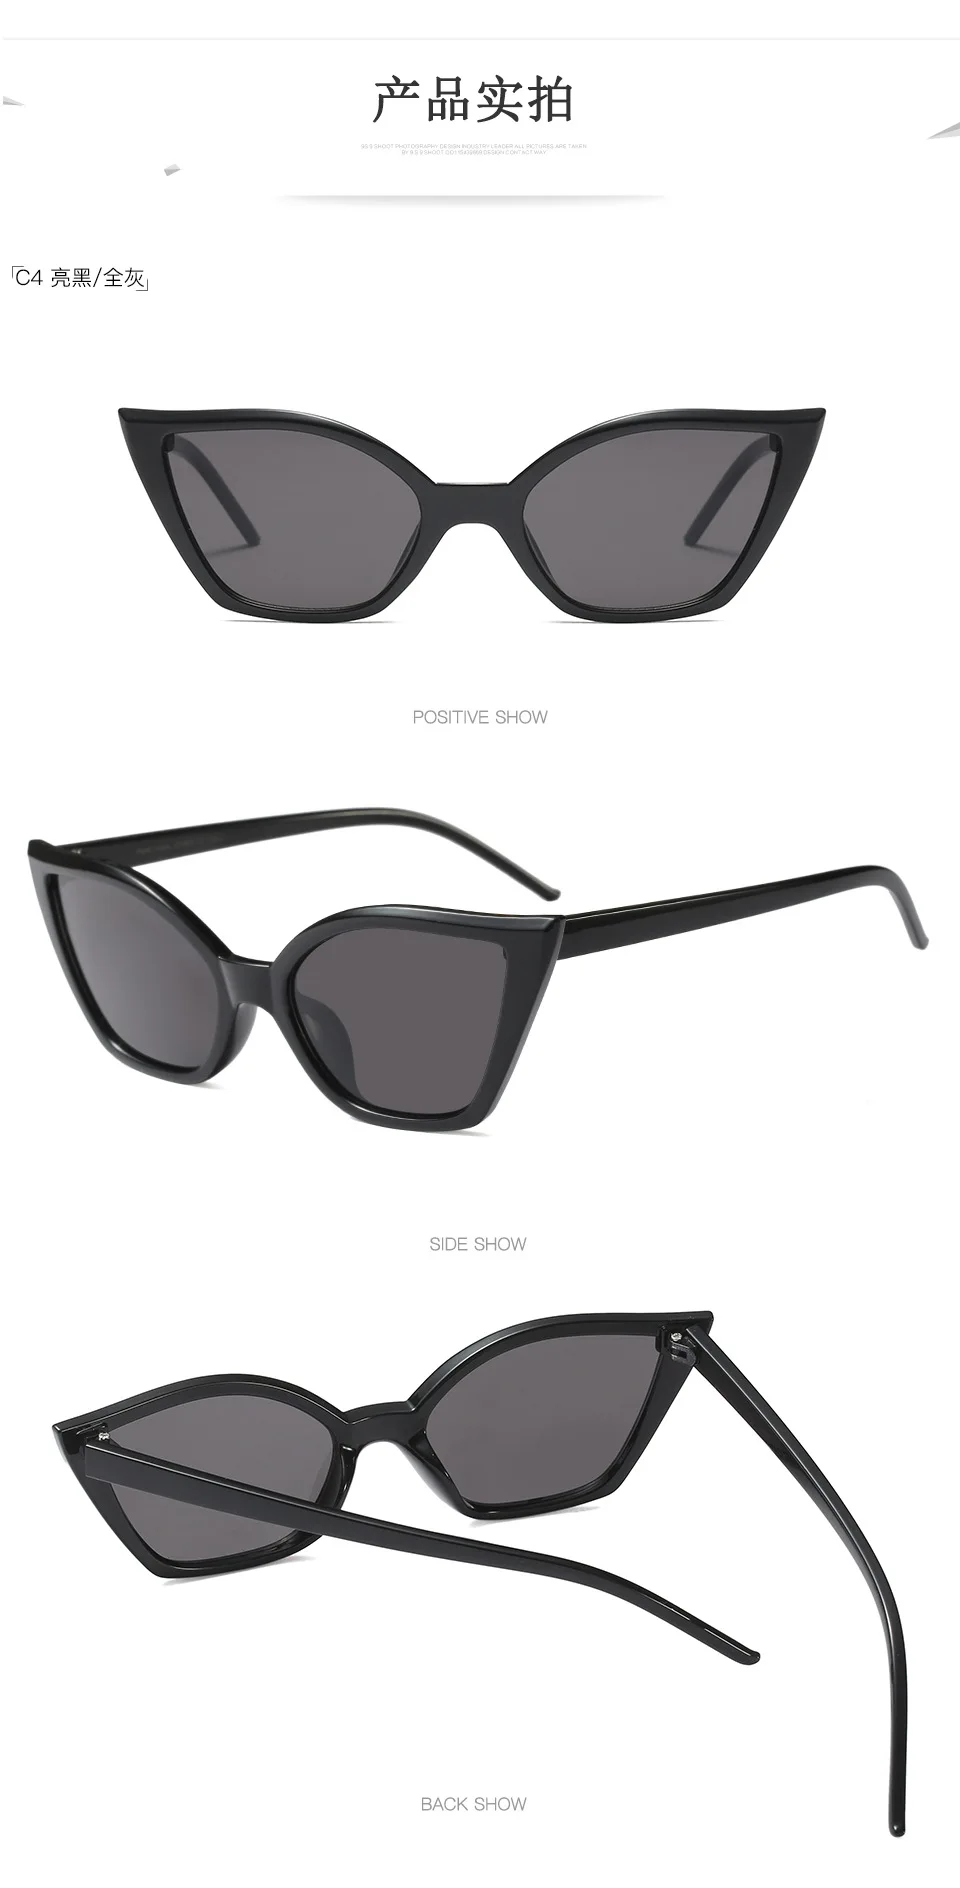 Оригинальное качество роскошные солнцезащитные очки для женщин 2019 Винтаж глаз защита от солнца очки тенты для женские солнцезащитные очки